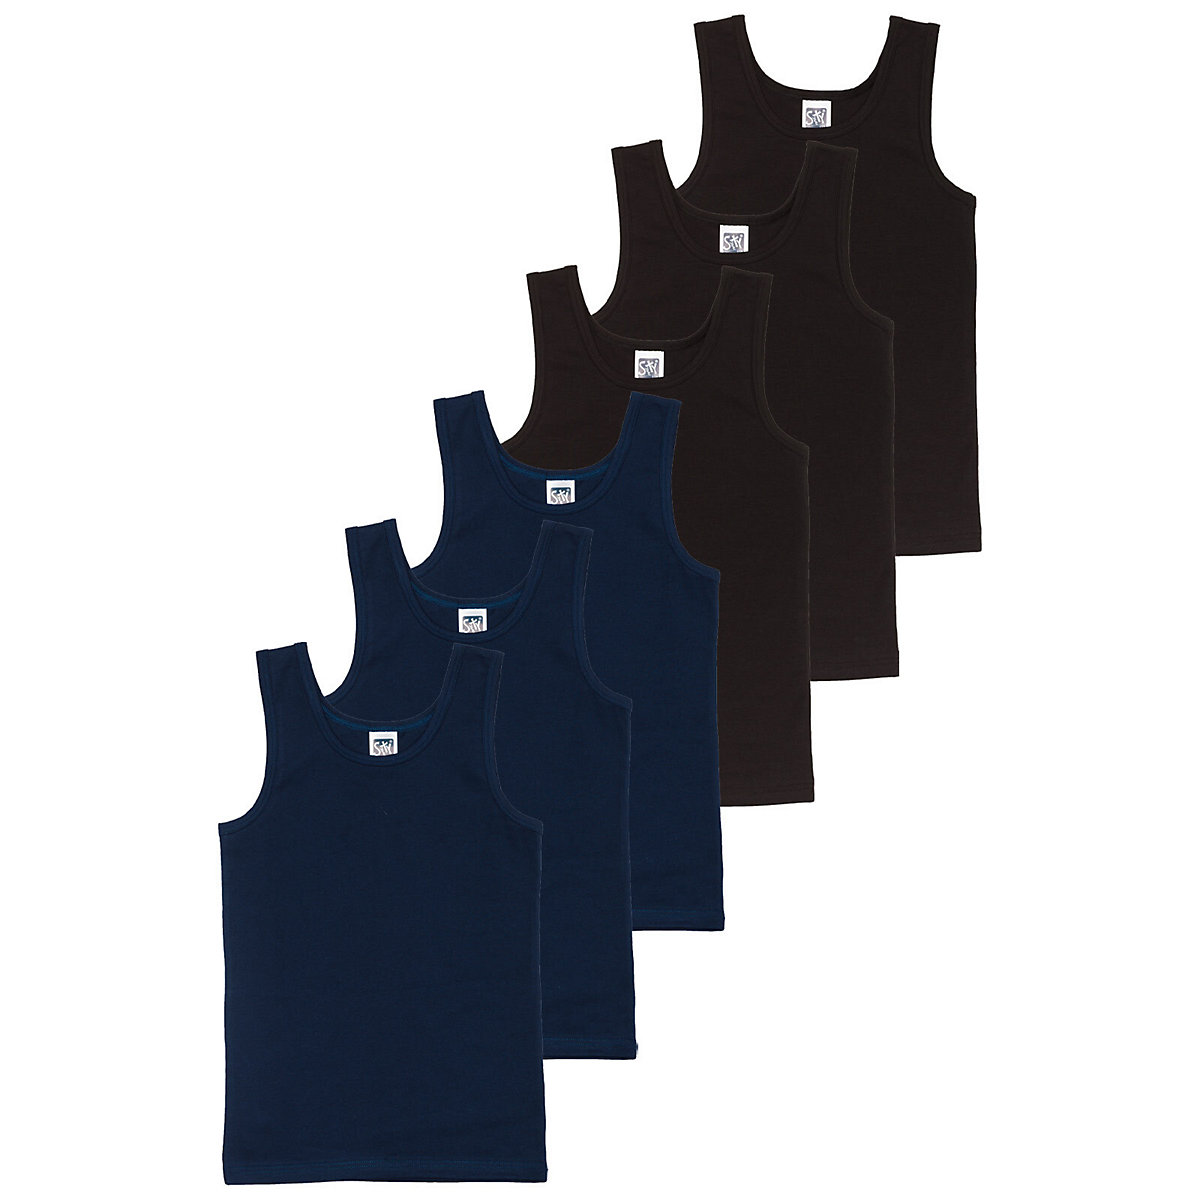 Sweety for Kids 6er Sparpack Knaben Sportshirt Single Jersey Unterhemden für Jungen blau/schwarz